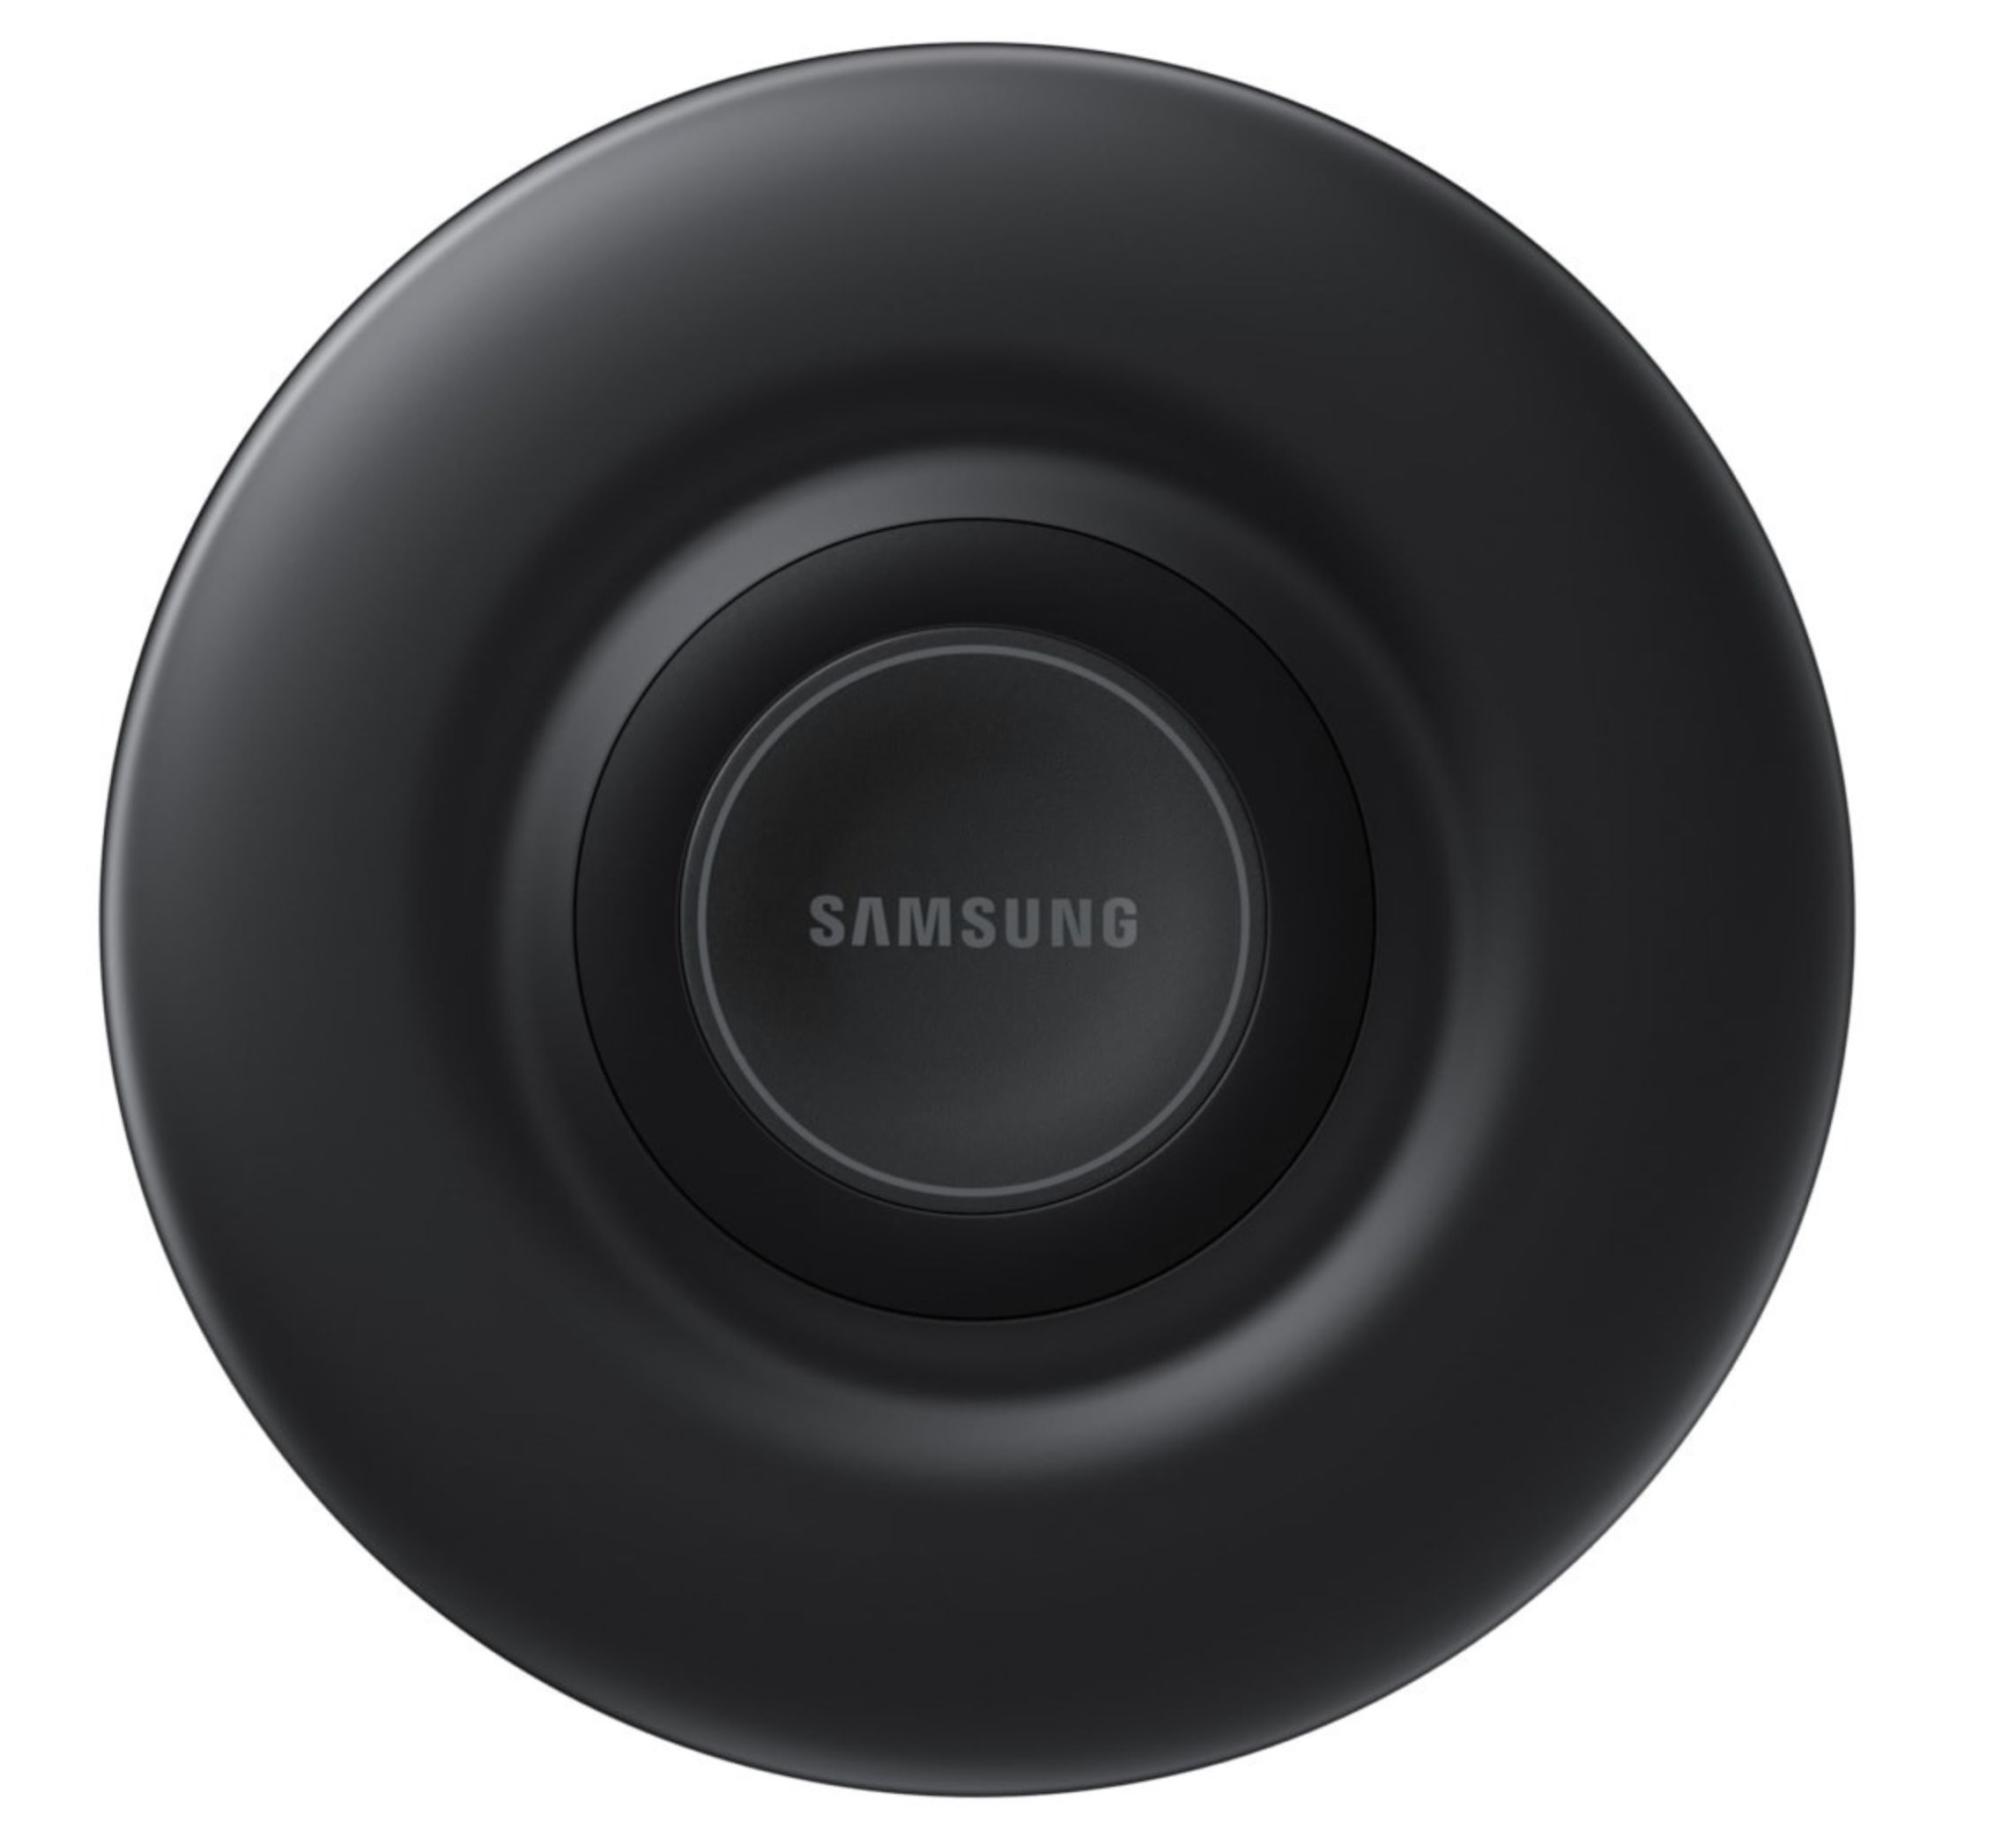 Samsung Galaxy S20 FE 128GB + wireless Charger Pad + HBL In Ears für 1€ + o2 Allnet Flat 12GB LTE für 19,99€ mtl.